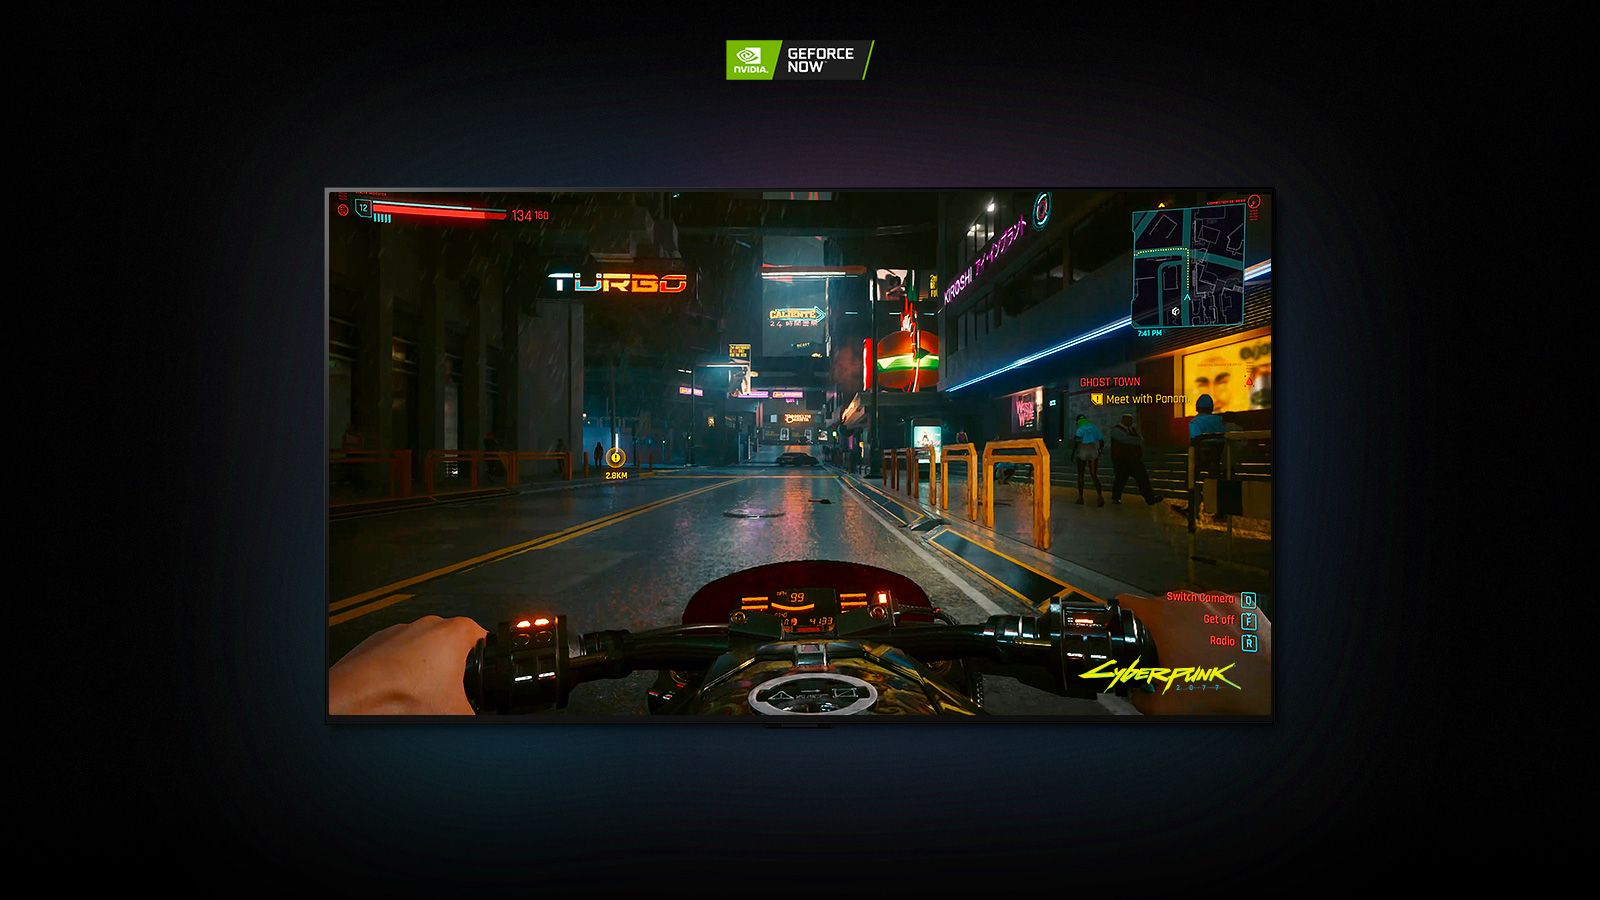 U sceni iz Cyberpunk 2077 koja se prikazuje na LG OLED ekranu, igrač se vozi na motociklu kroz ulicu osvetljenu neonskim svetlima